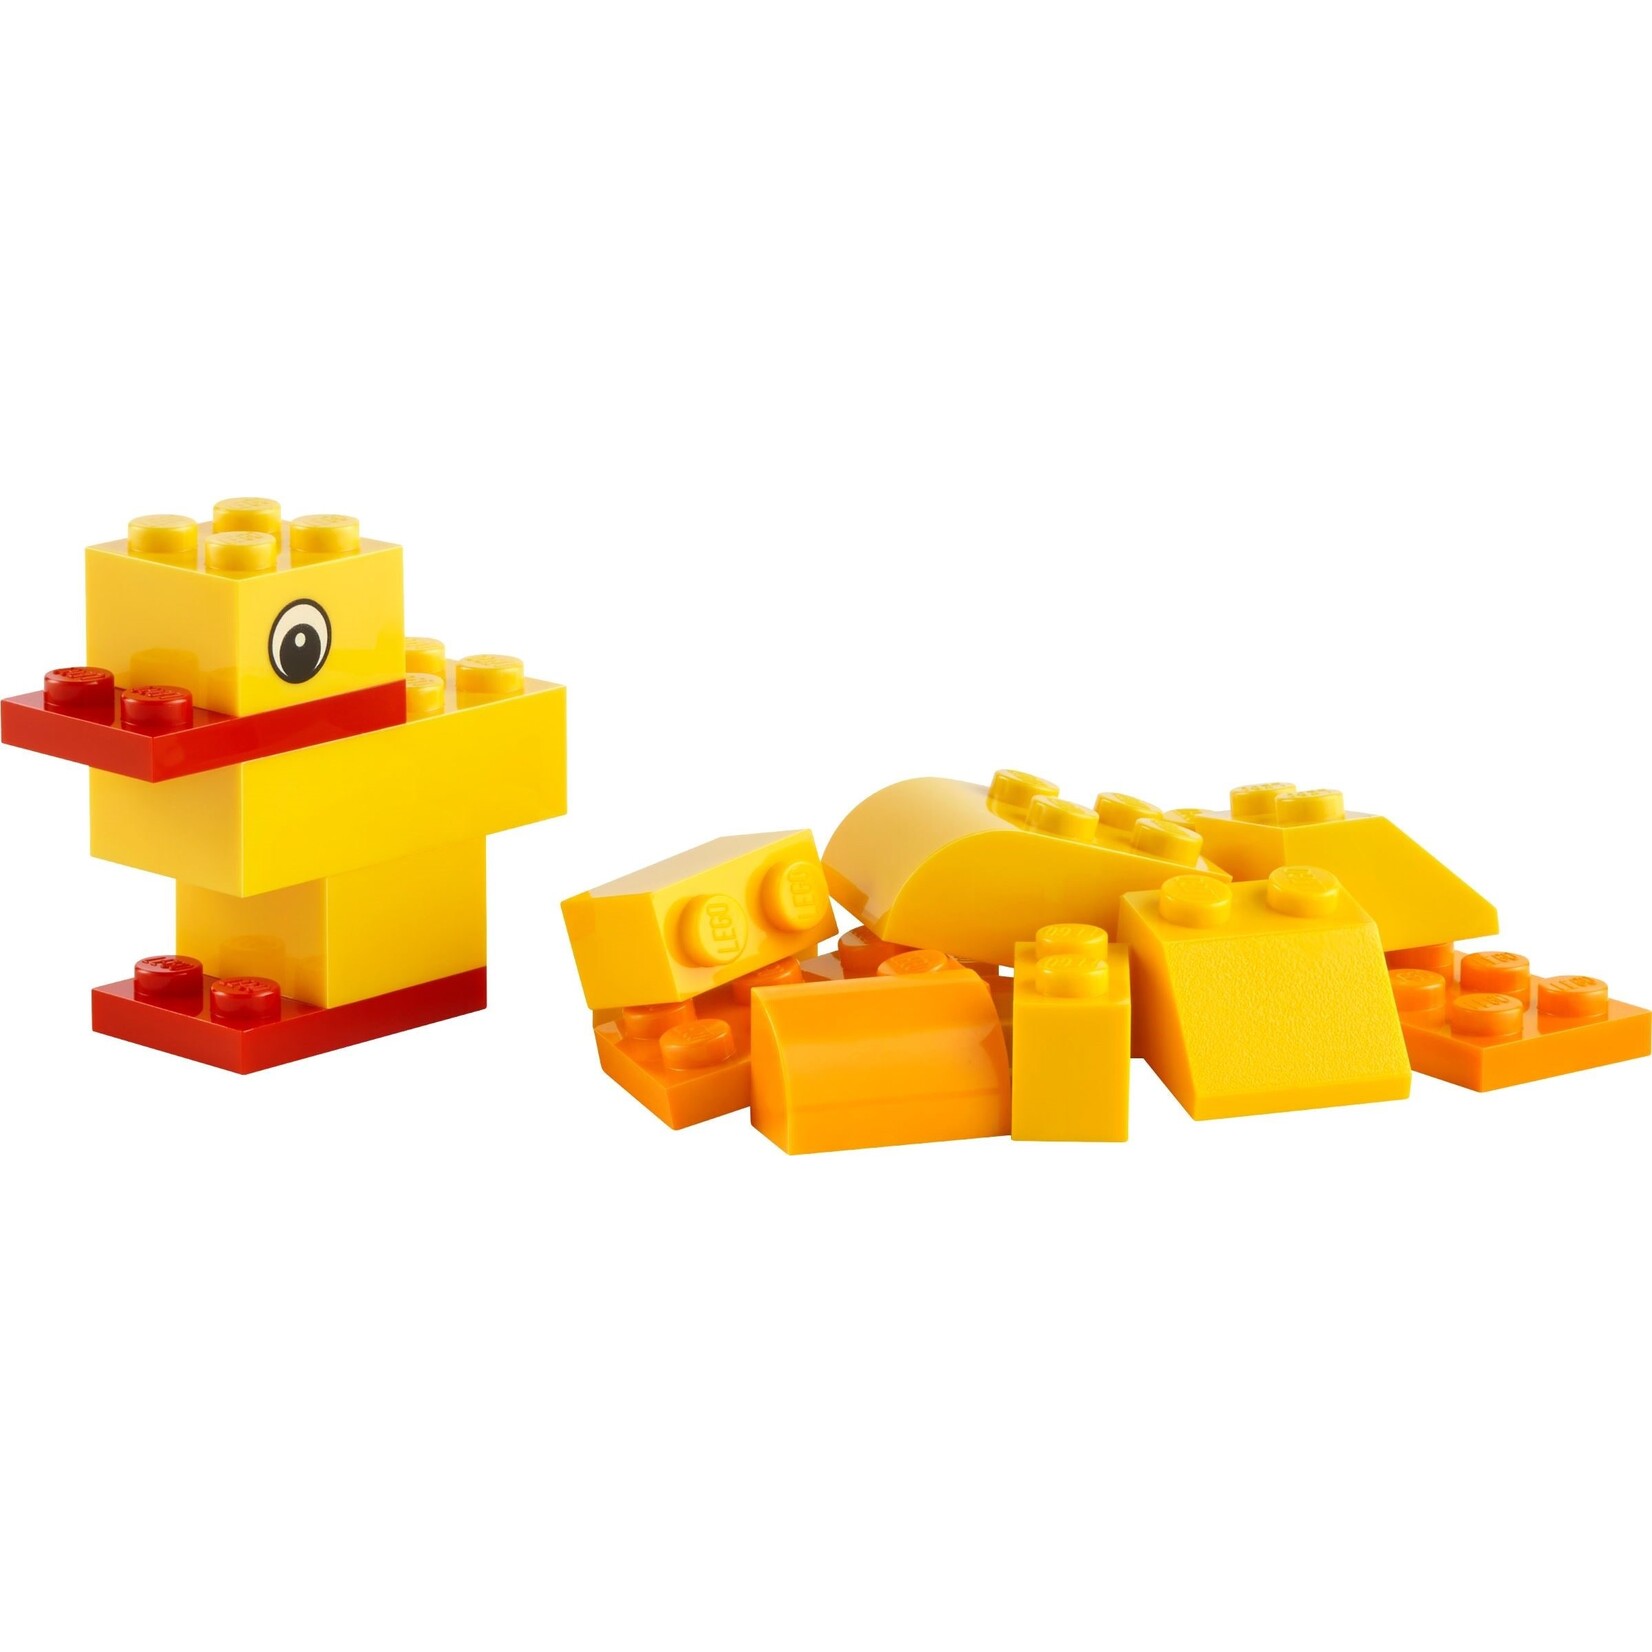 LEGO Zelf dieren bouwen Zoals jij wilt - 30503